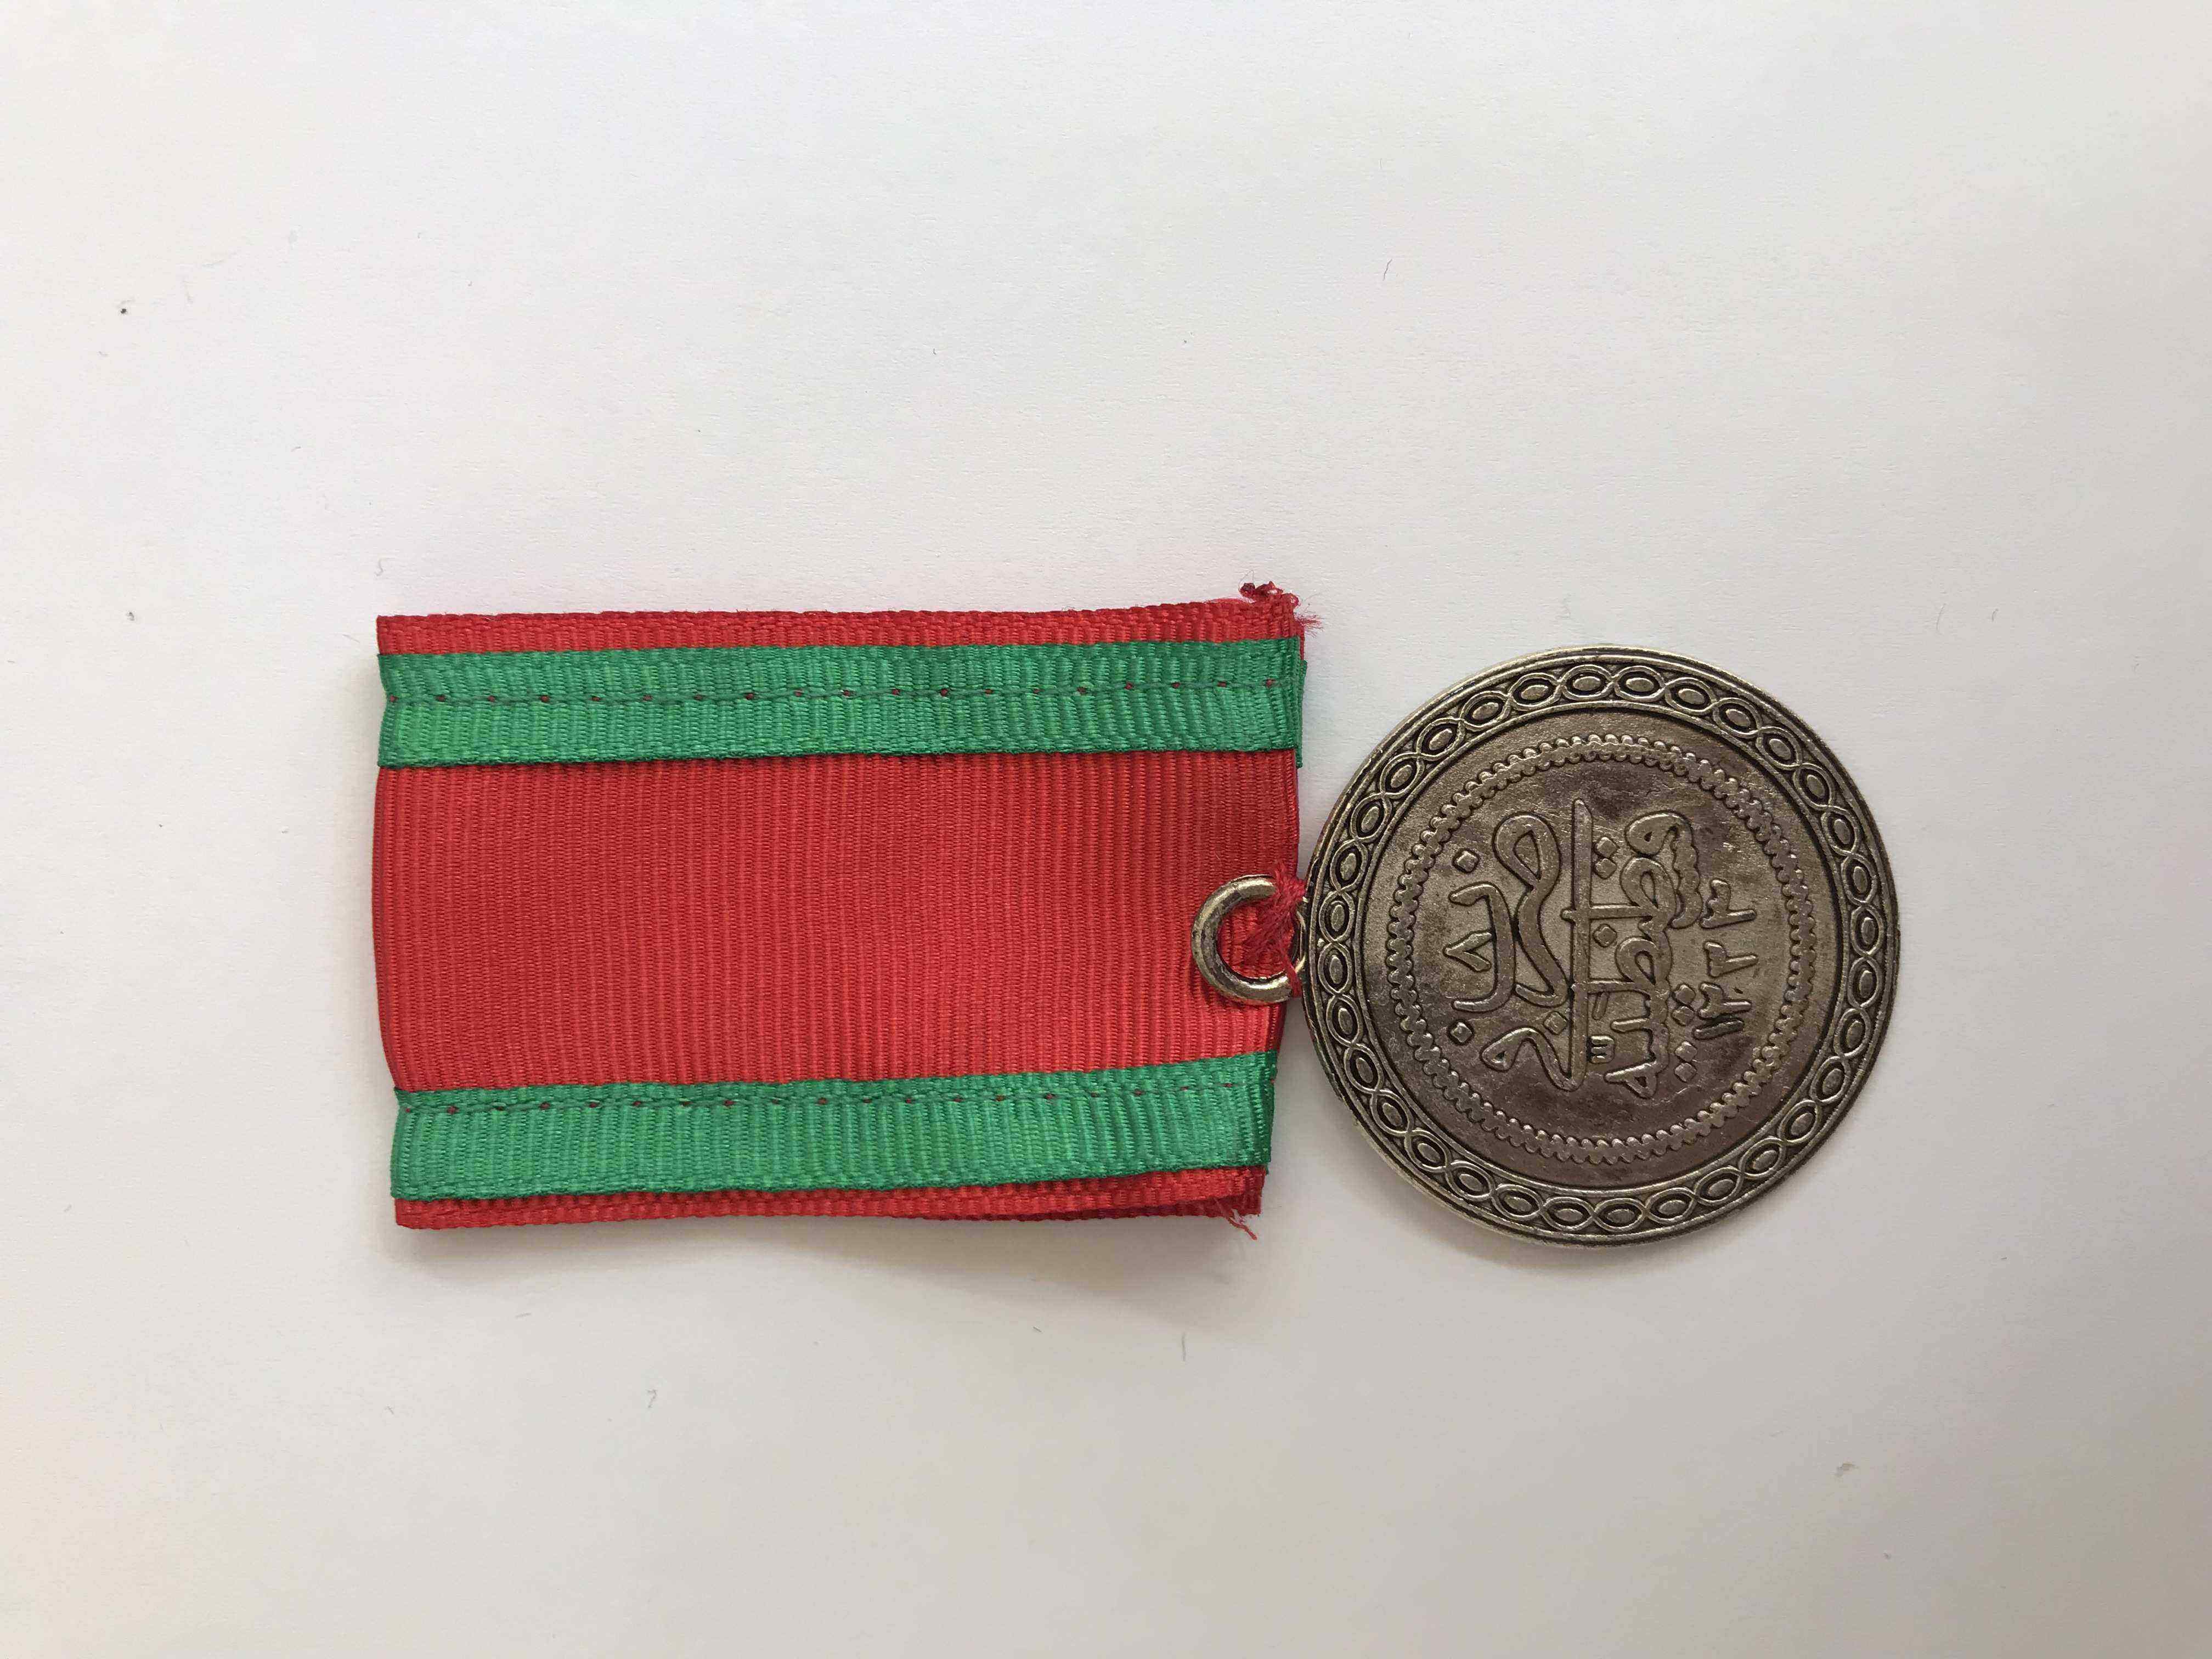 Osmanlı Tuğralı Nişan | Ottoman Monogram Medal